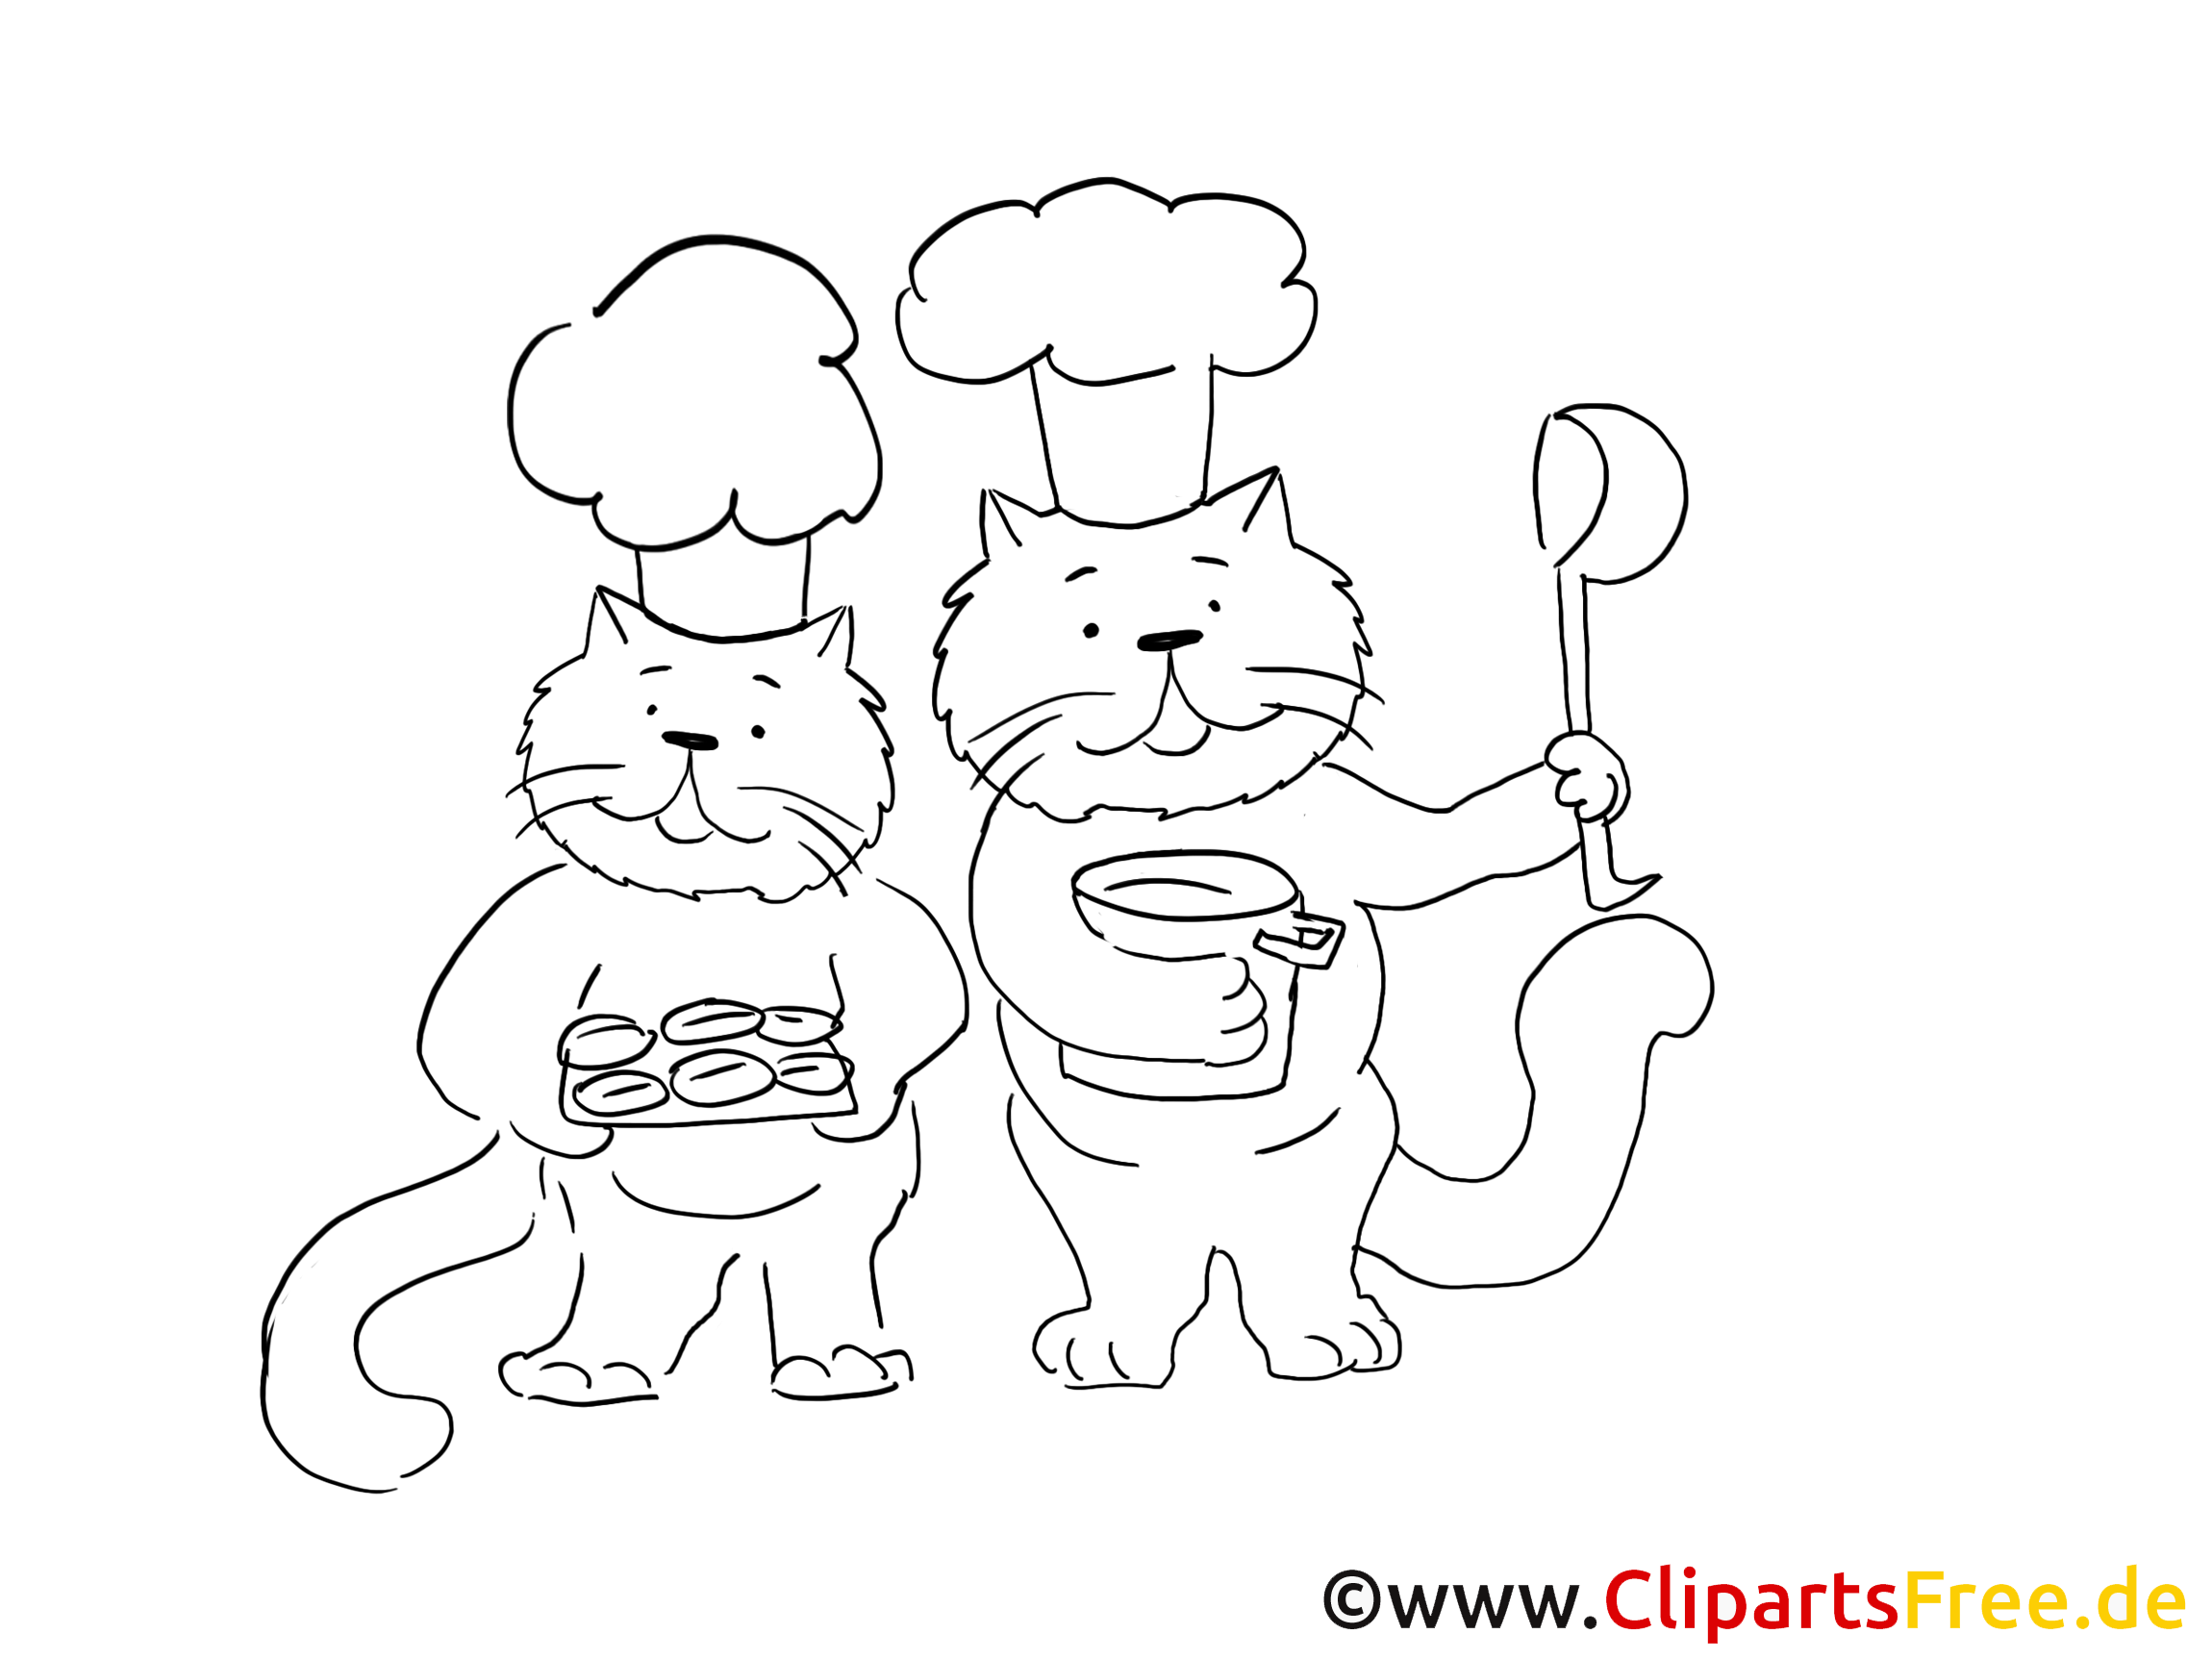 Cuisiniers clip arts – Chats à imprimer